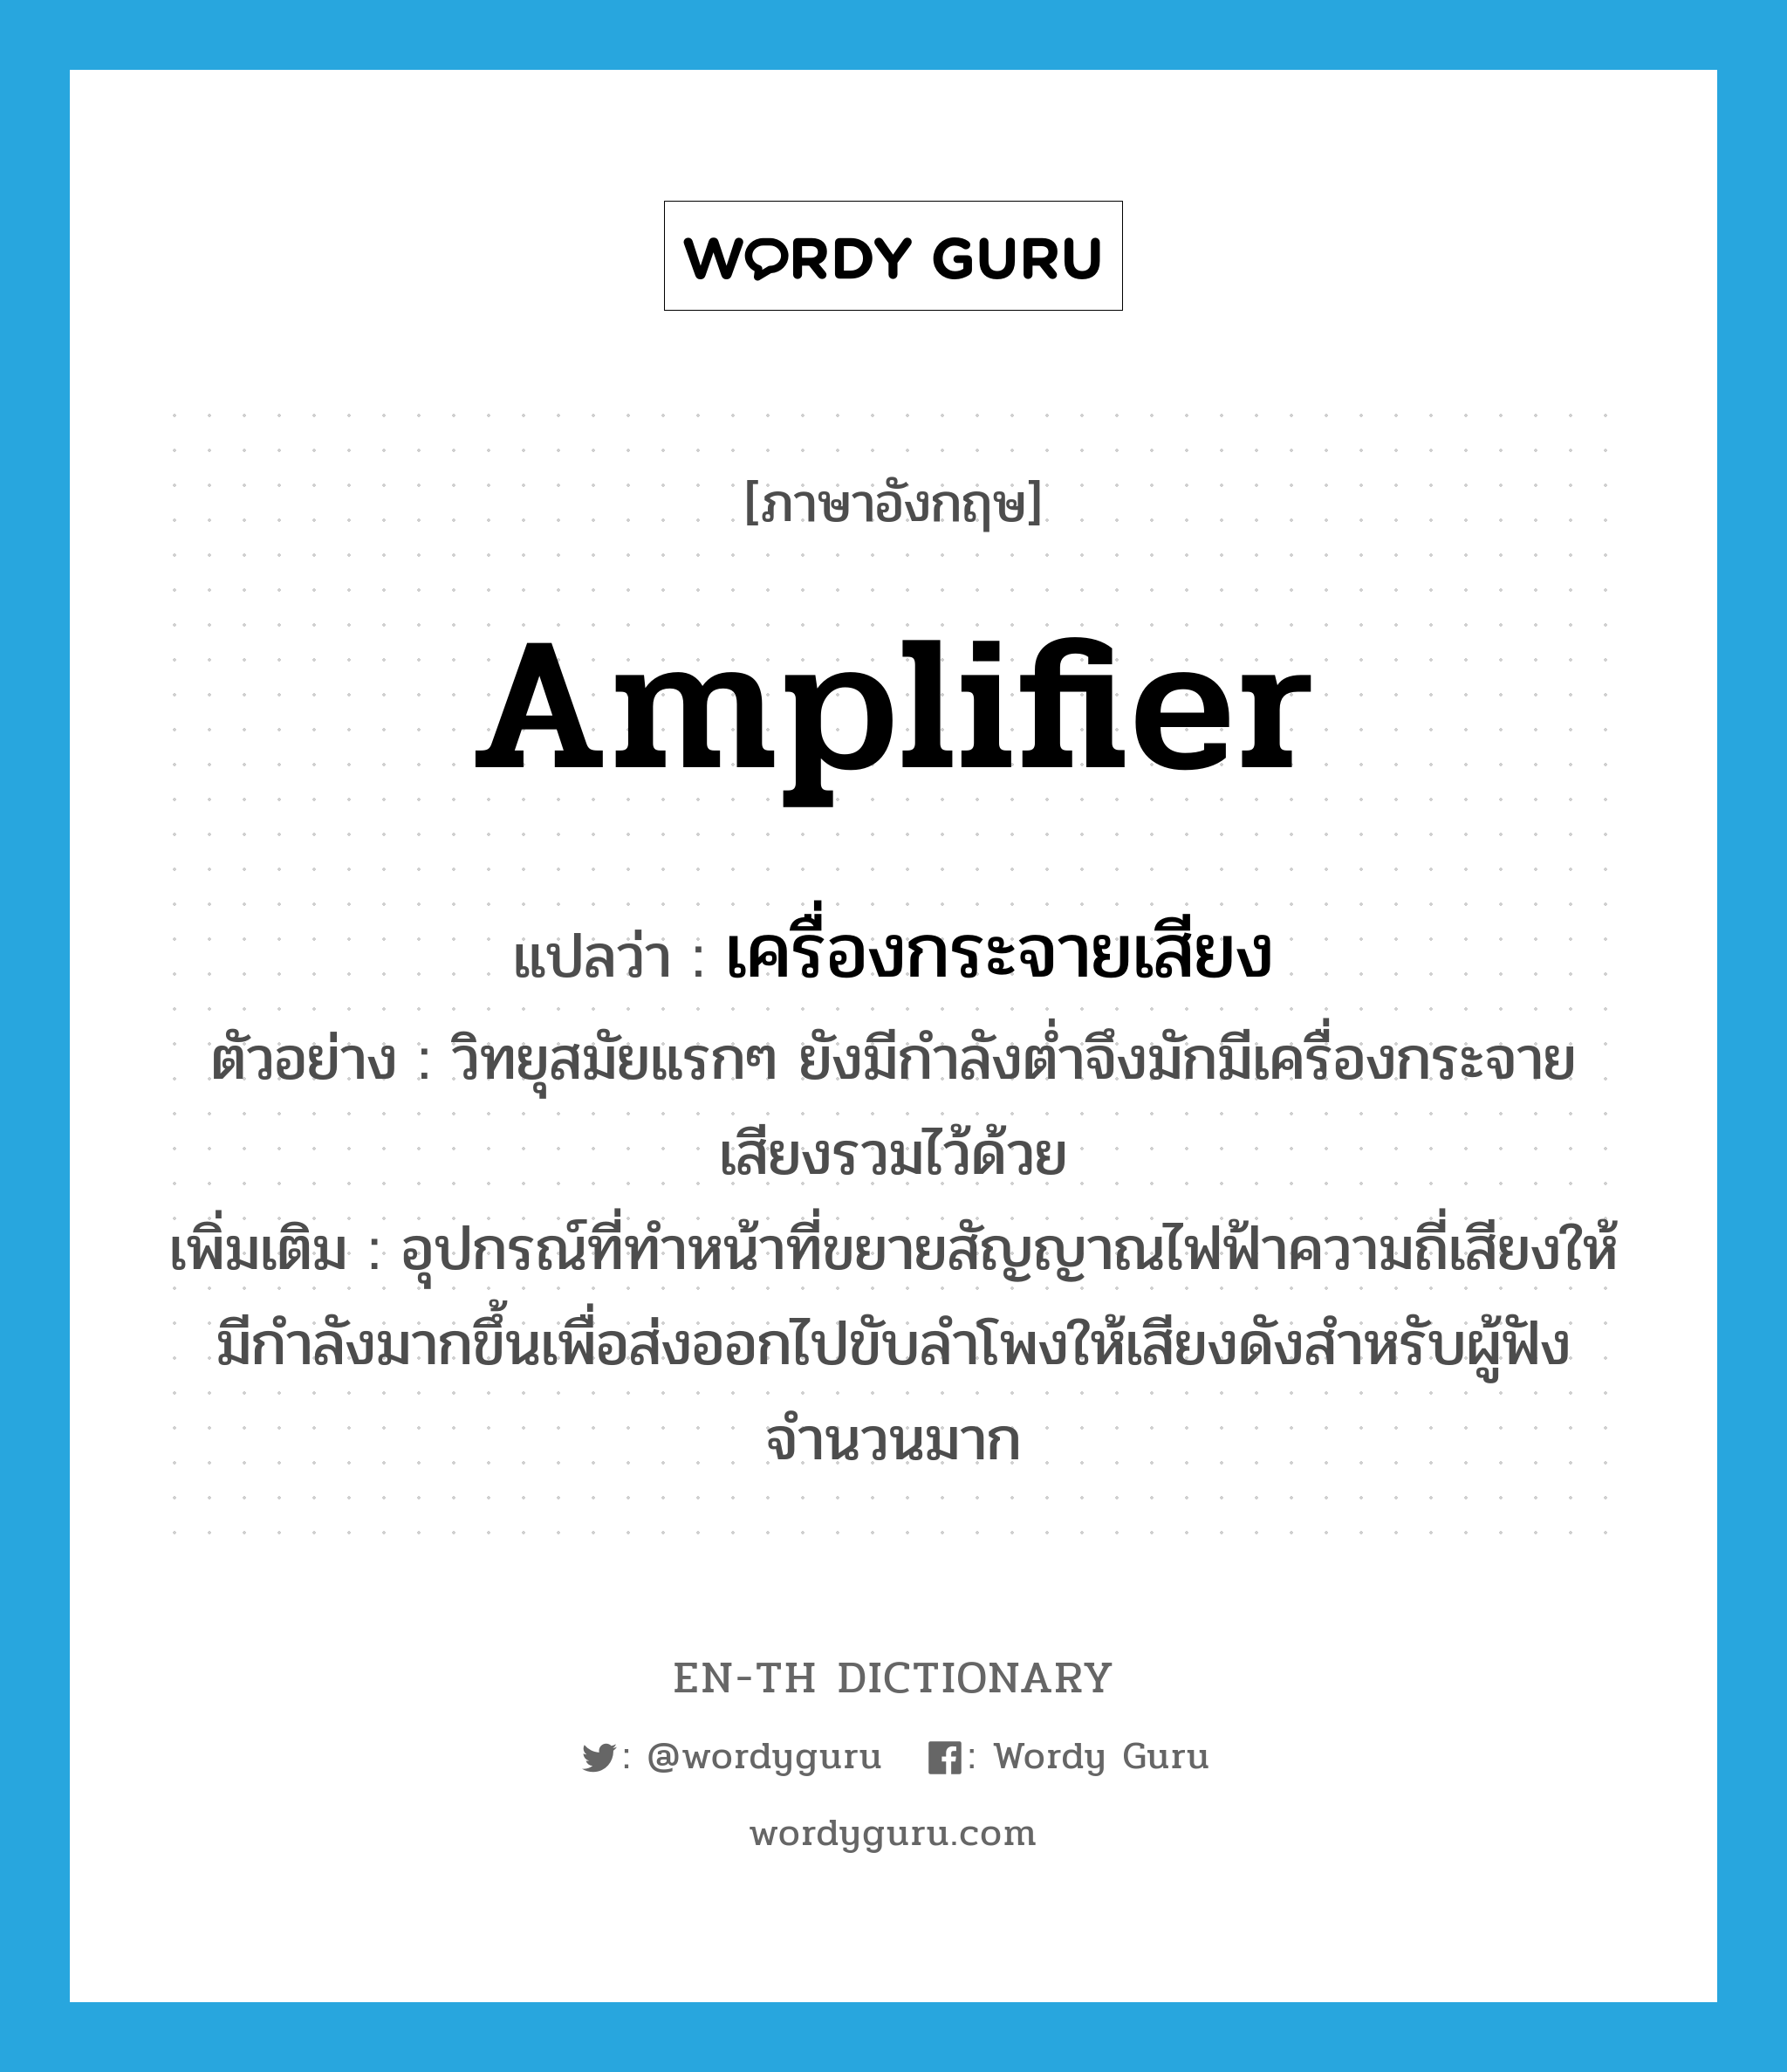 amplifier แปลว่า?, คำศัพท์ภาษาอังกฤษ amplifier แปลว่า เครื่องกระจายเสียง ประเภท N ตัวอย่าง วิทยุสมัยแรกๆ ยังมีกำลังต่ำจึงมักมีเครื่องกระจายเสียงรวมไว้ด้วย เพิ่มเติม อุปกรณ์ที่ทำหน้าที่ขยายสัญญาณไฟฟ้าความถี่เสียงให้มีกำลังมากขึ้นเพื่อส่งออกไปขับลำโพงให้เสียงดังสำหรับผู้ฟังจำนวนมาก หมวด N